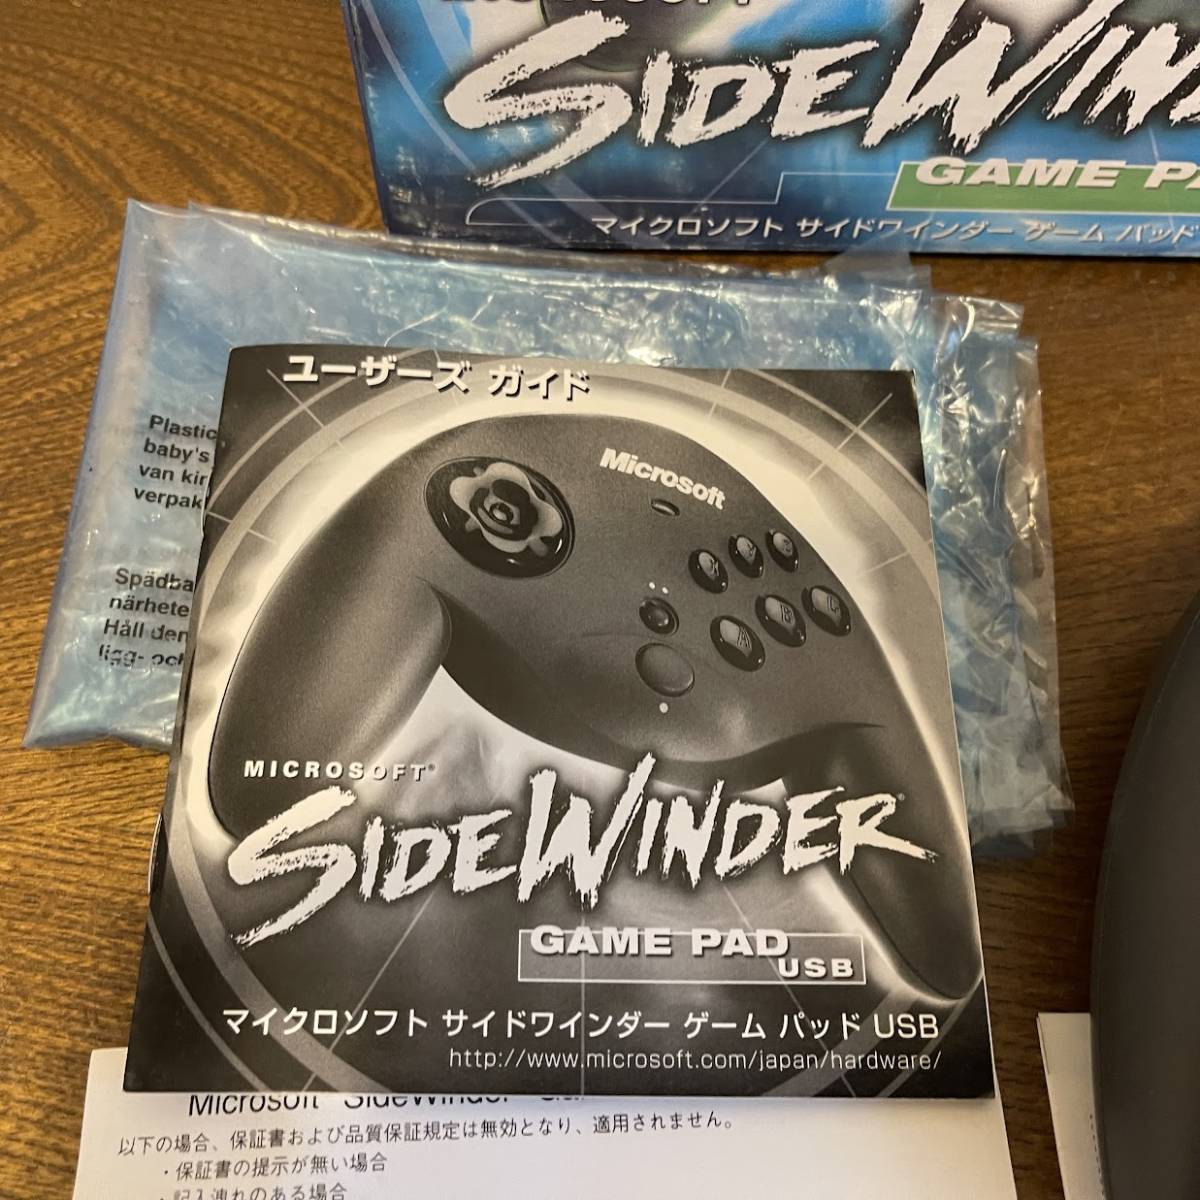 [ коробка мнение имеется * Junk ] Microsoft SideWinder Game Pad USB*0701 Part No. X08-40342